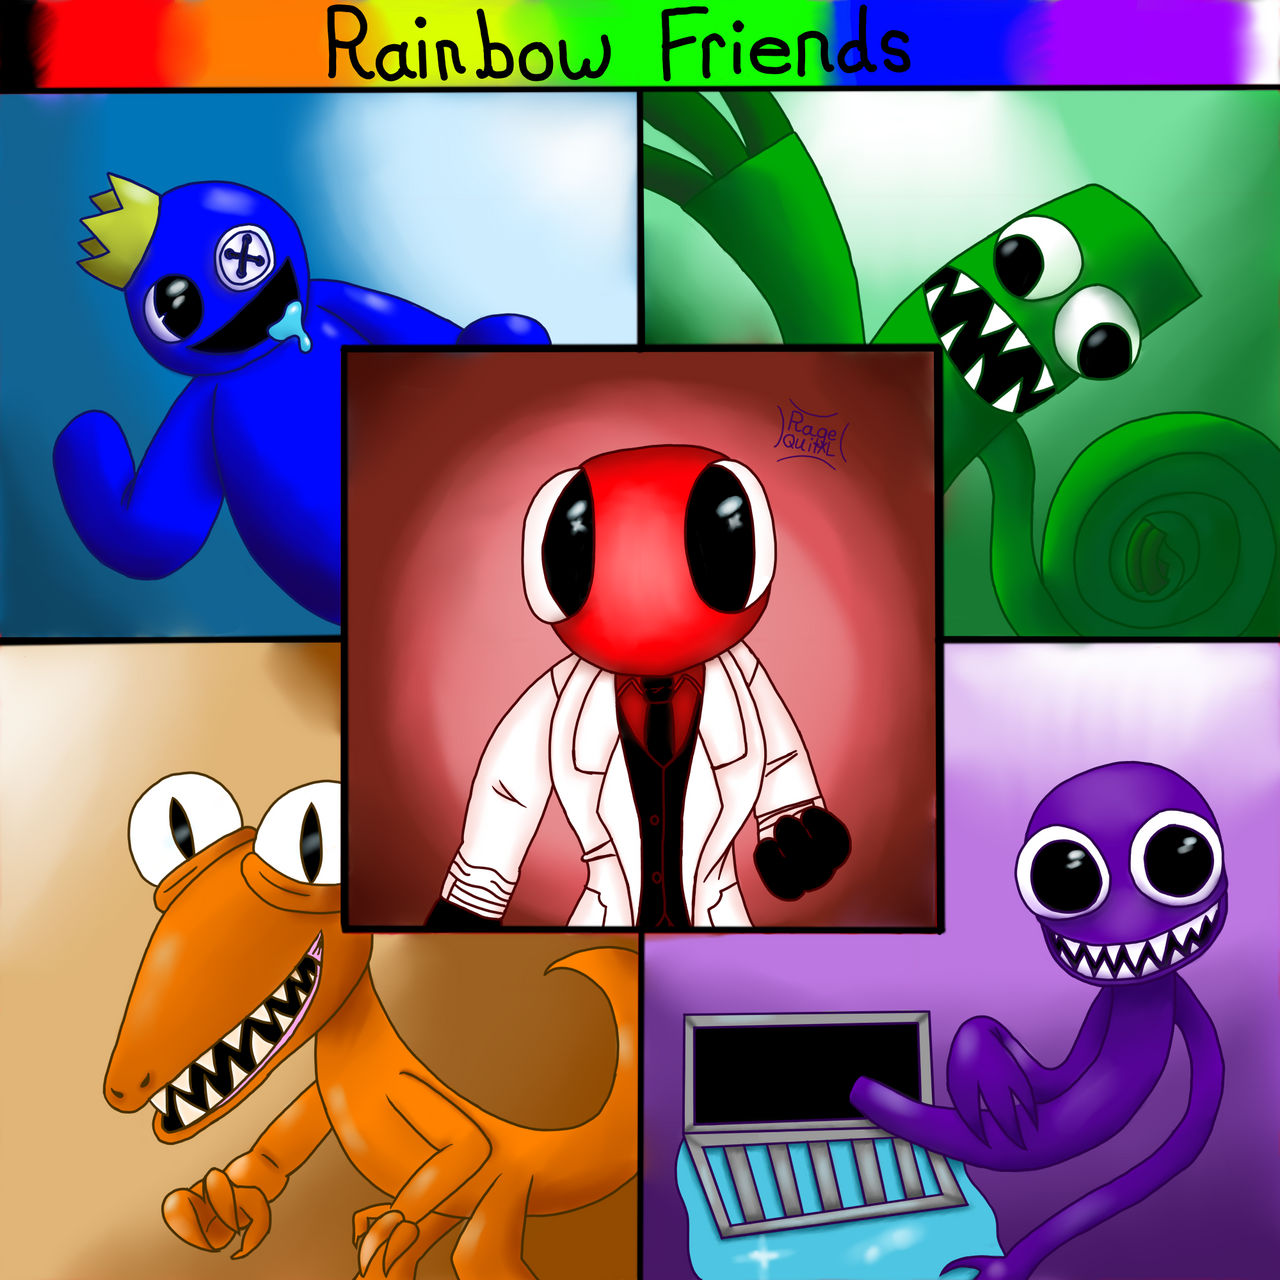 Rainbow friends first fanart by BloodyMaryLPS1112 on DeviantArt